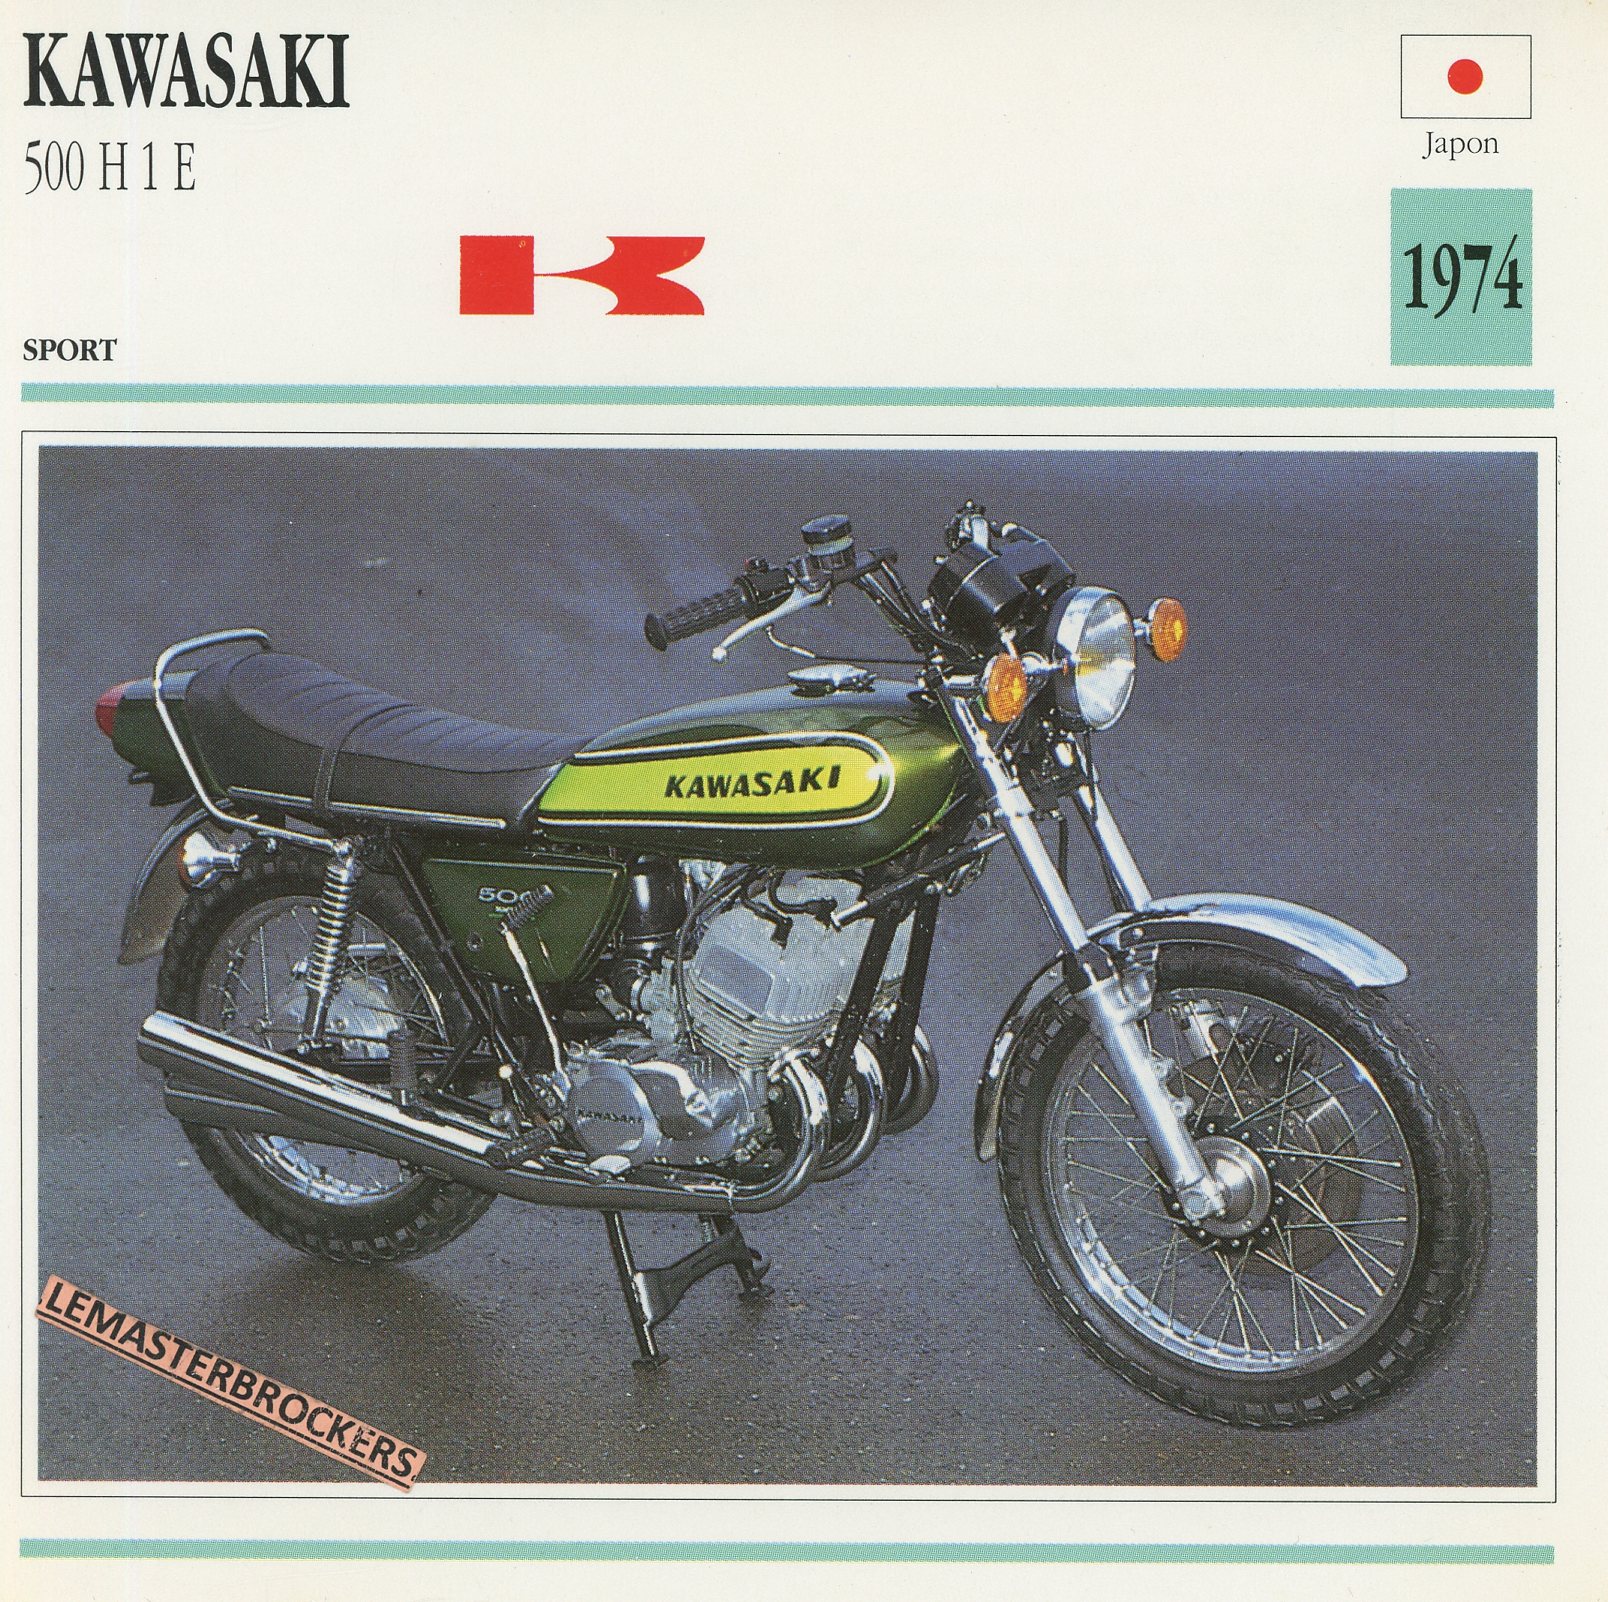 KAWASAKI 500 H1 E 1974 - FICHE MOTO KAWASAKI